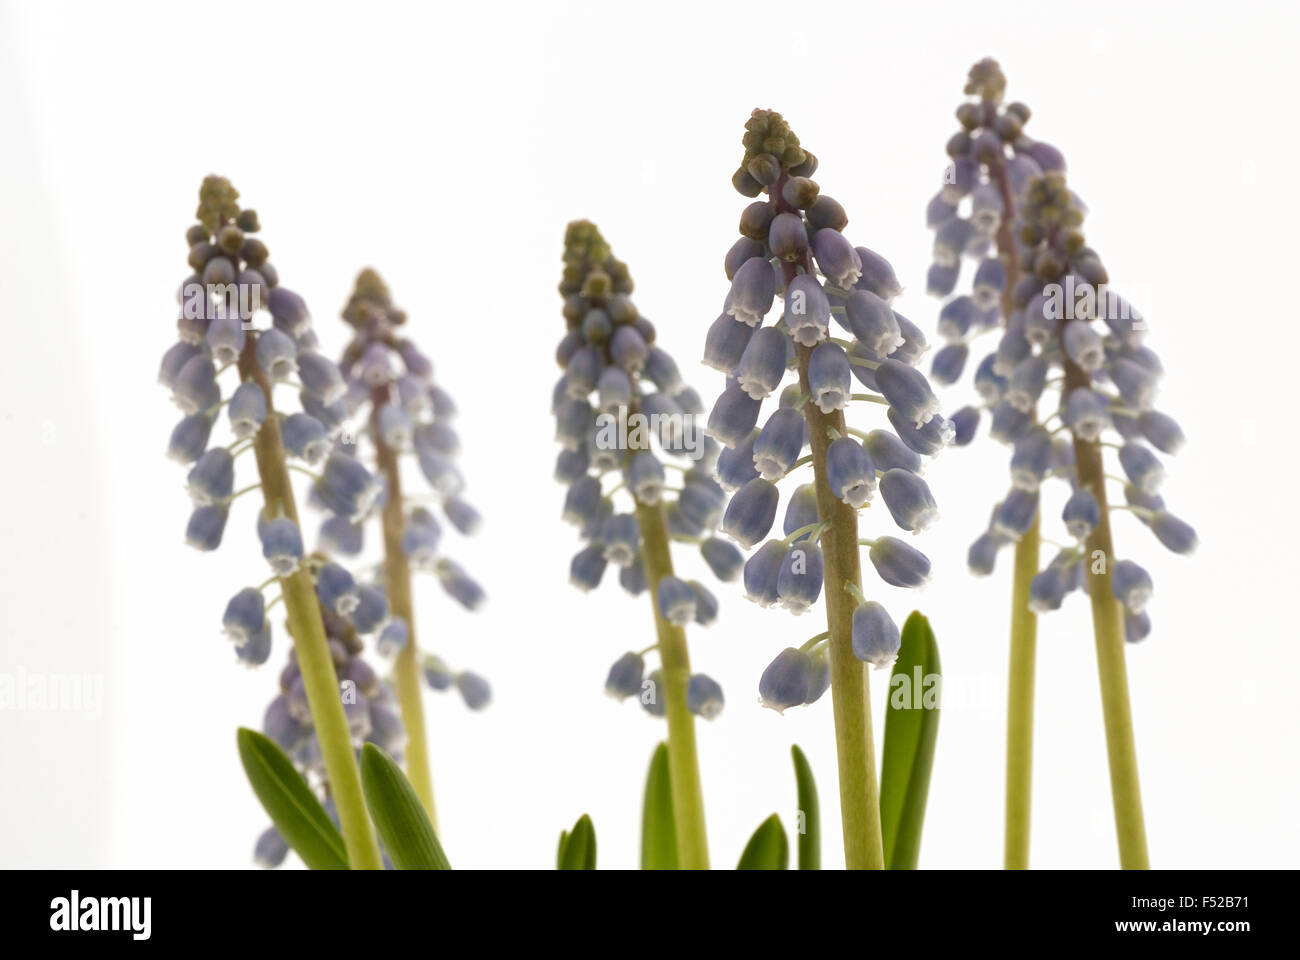 Starch Grape Hyacinth (Muscari neglectum) blossoms macro shot close-up Stock Photo